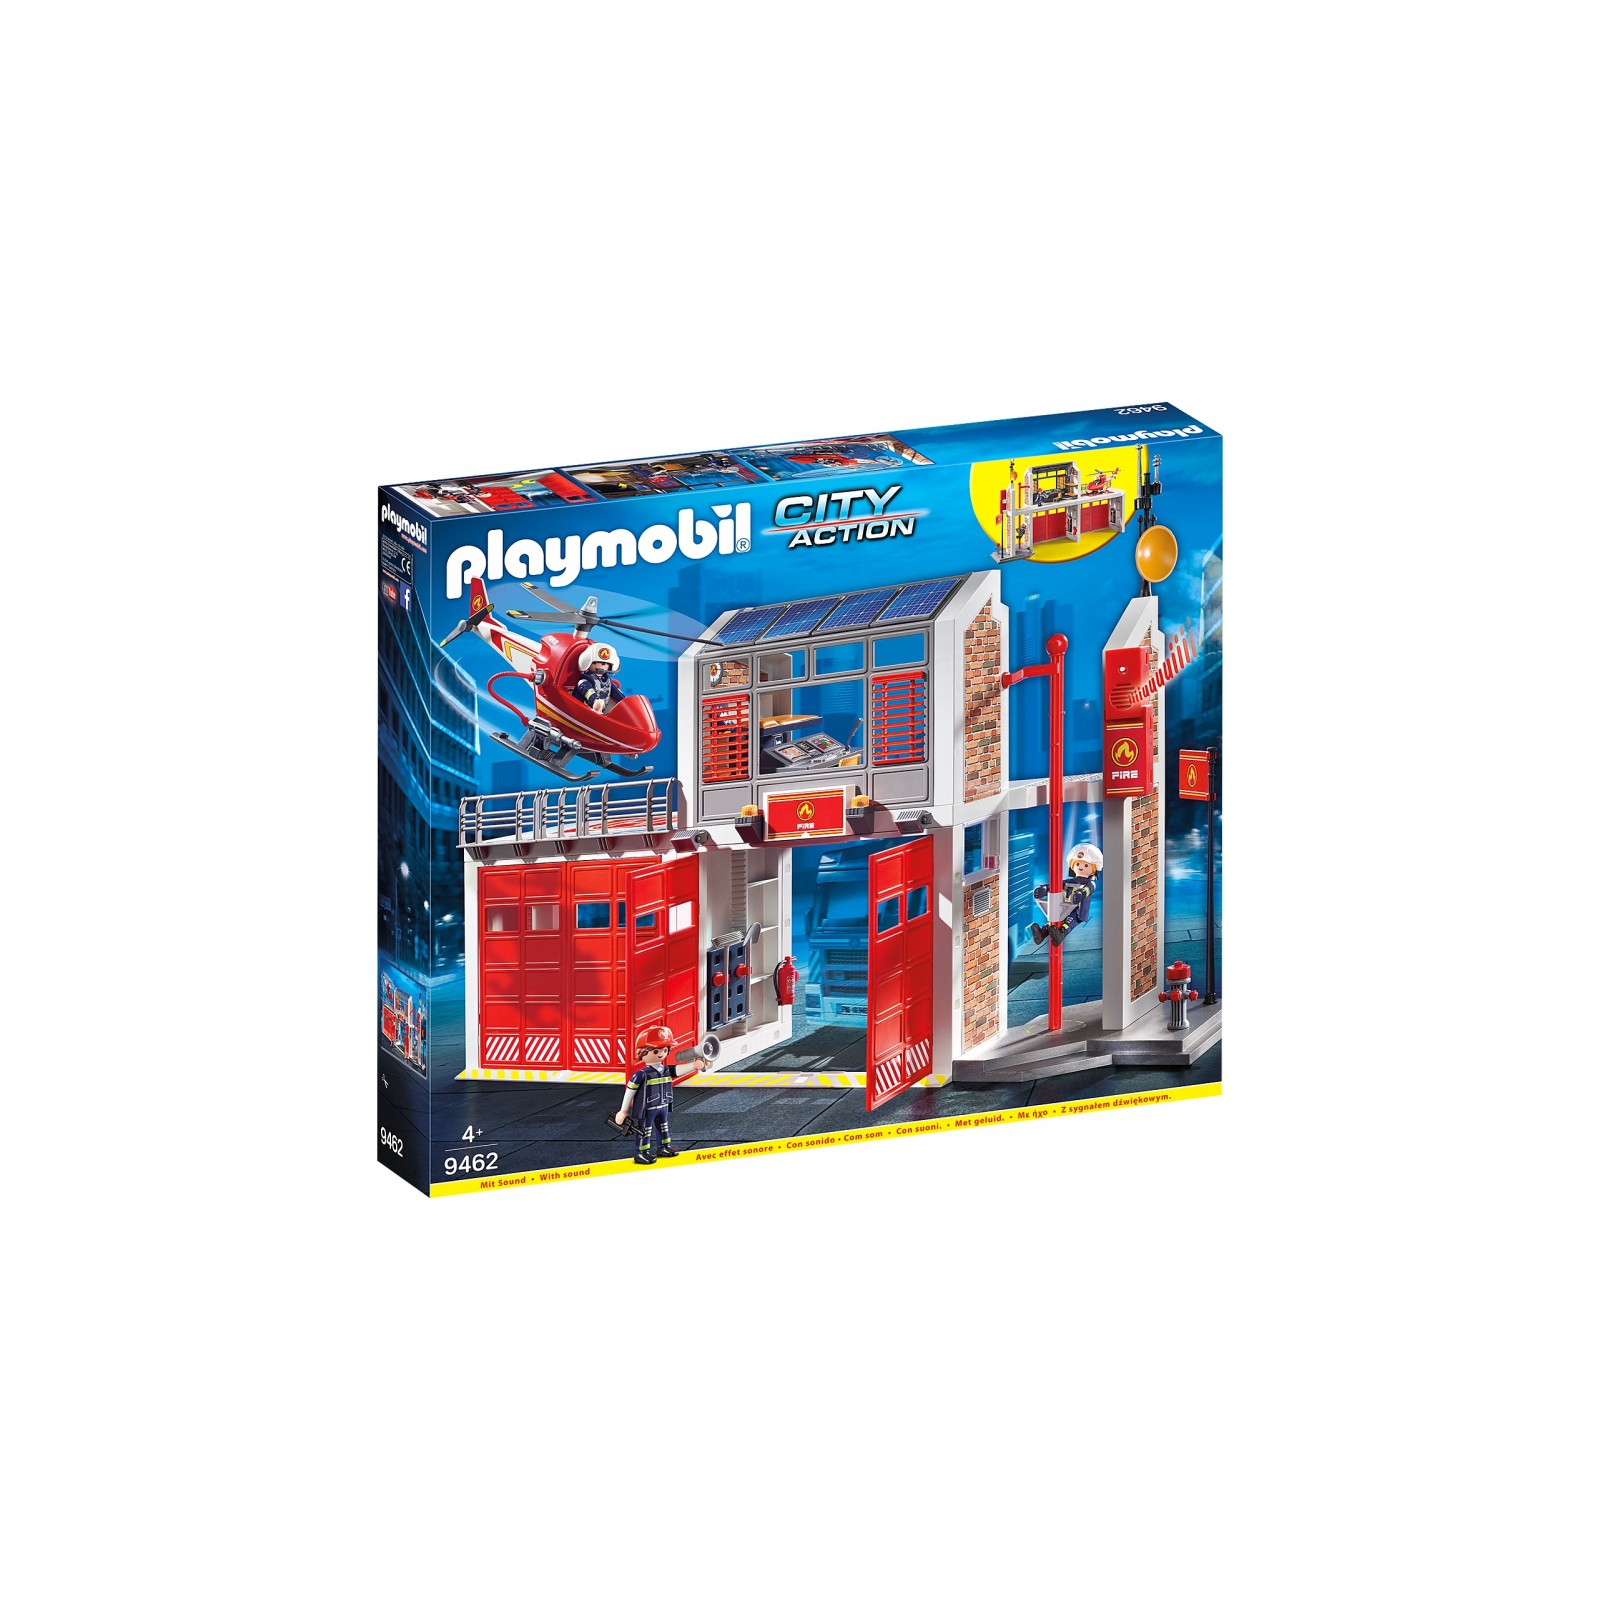 Конструктор Playmobil City action Пожарная станция (9462)